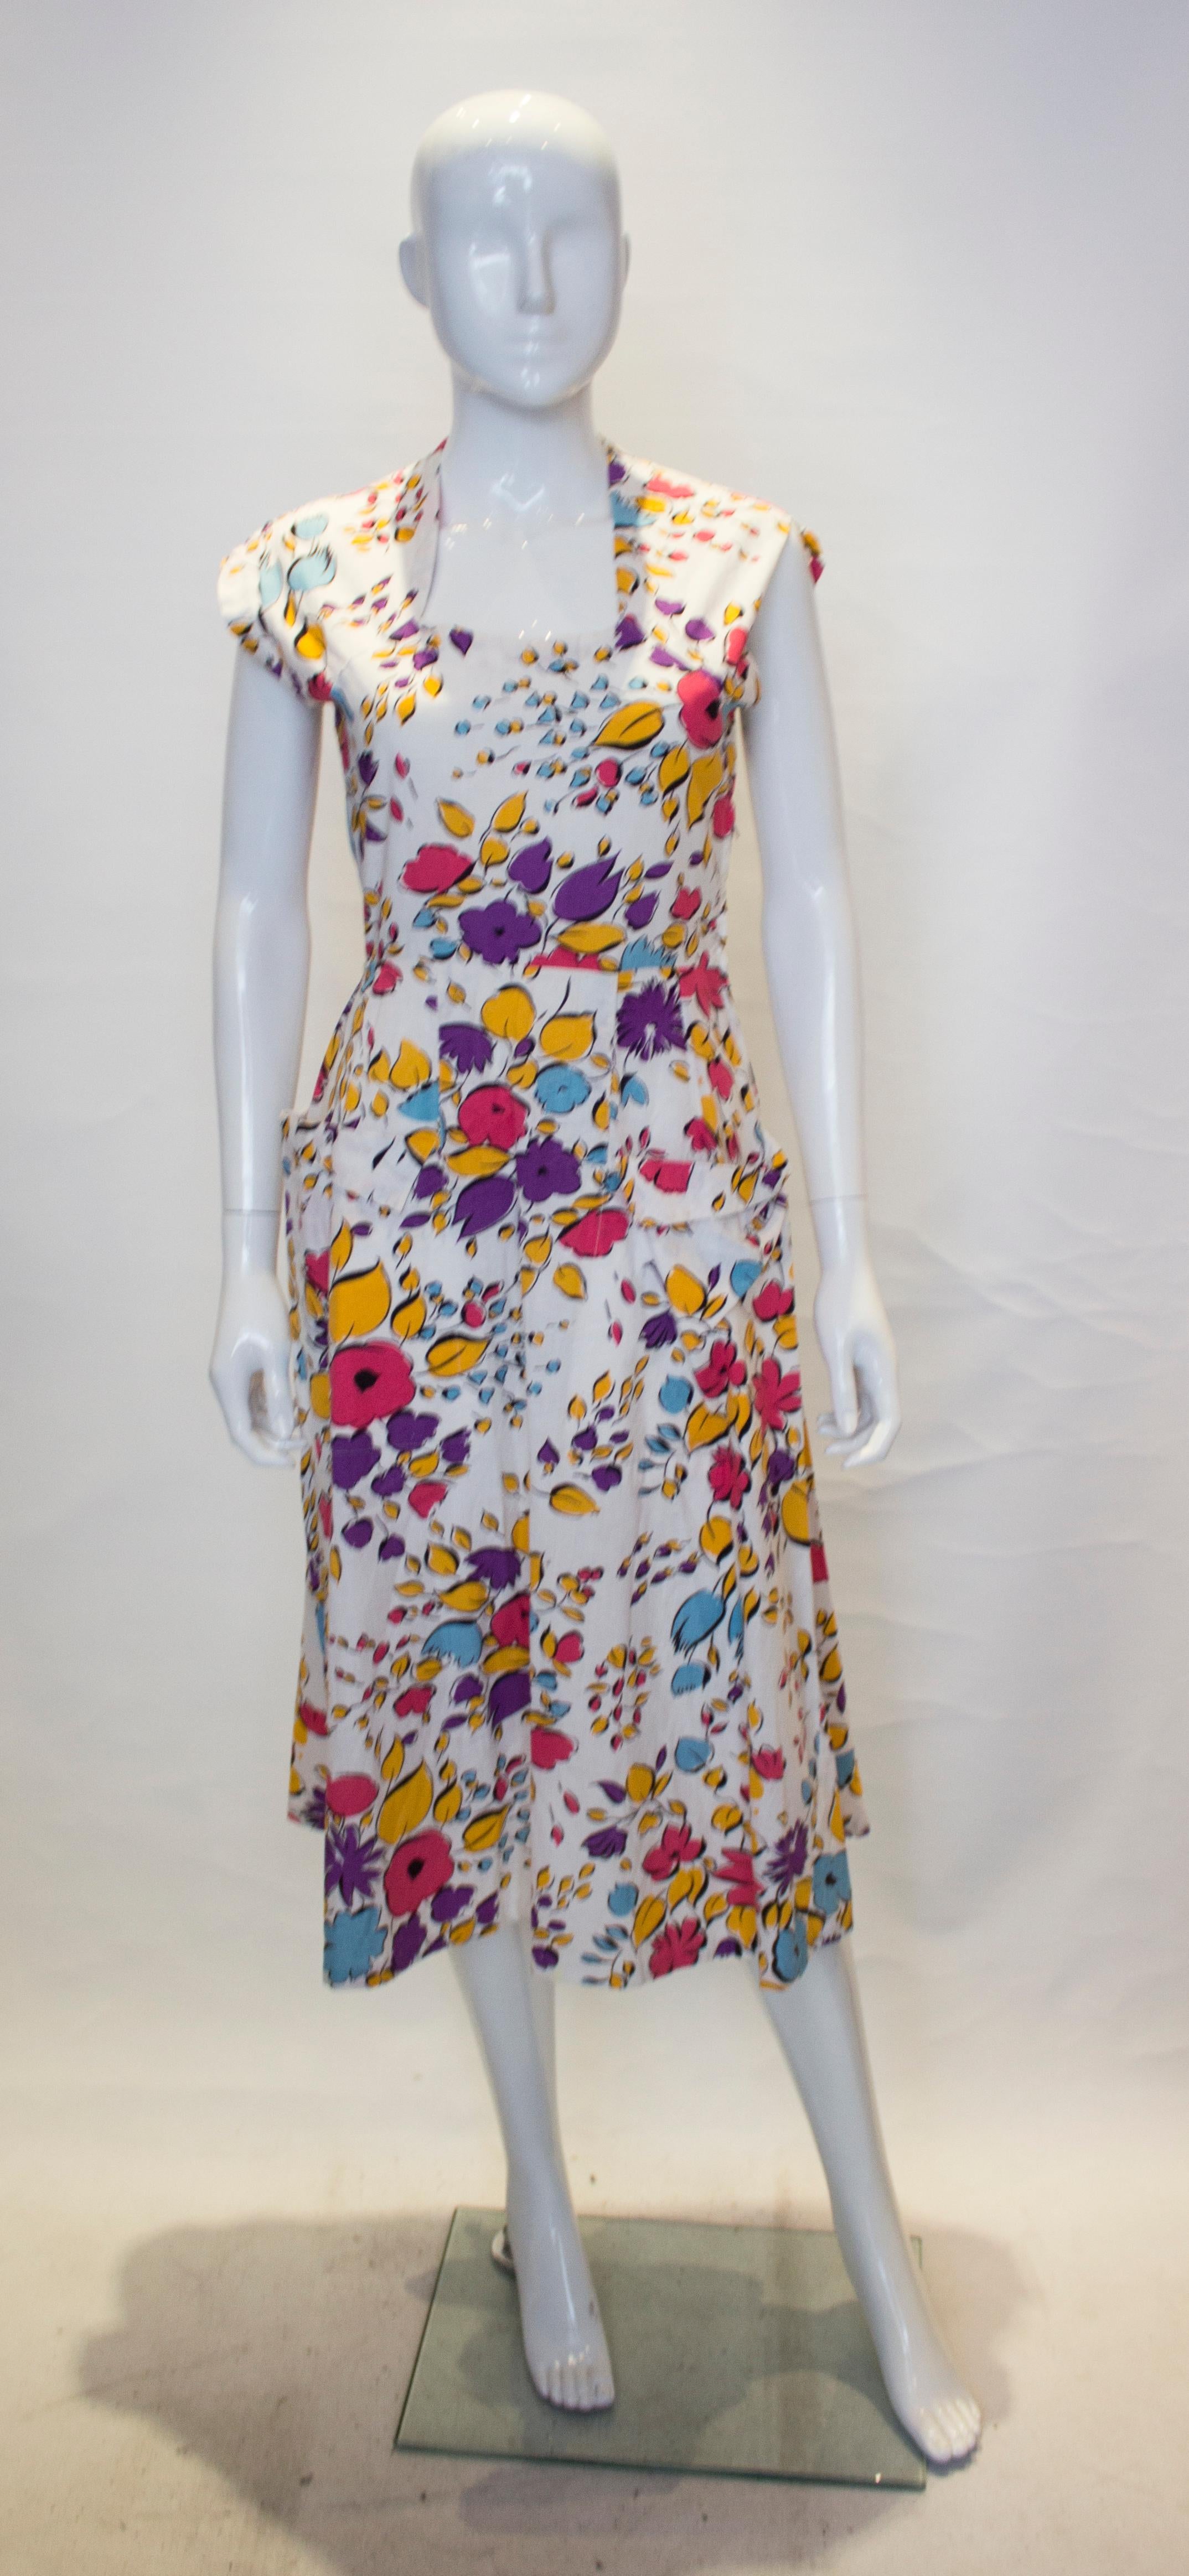 Ein hübsches und leicht zu tragendes Vintage-Sommerkleid. Das Kleid ist aus Baumwolle mit  mit weißem Hintergrund und Blumendruck.  Es hat einen quadratischen Ausschnitt, einen seitlichen Reißverschluss und zwei Taschen auf der Vorderseite.